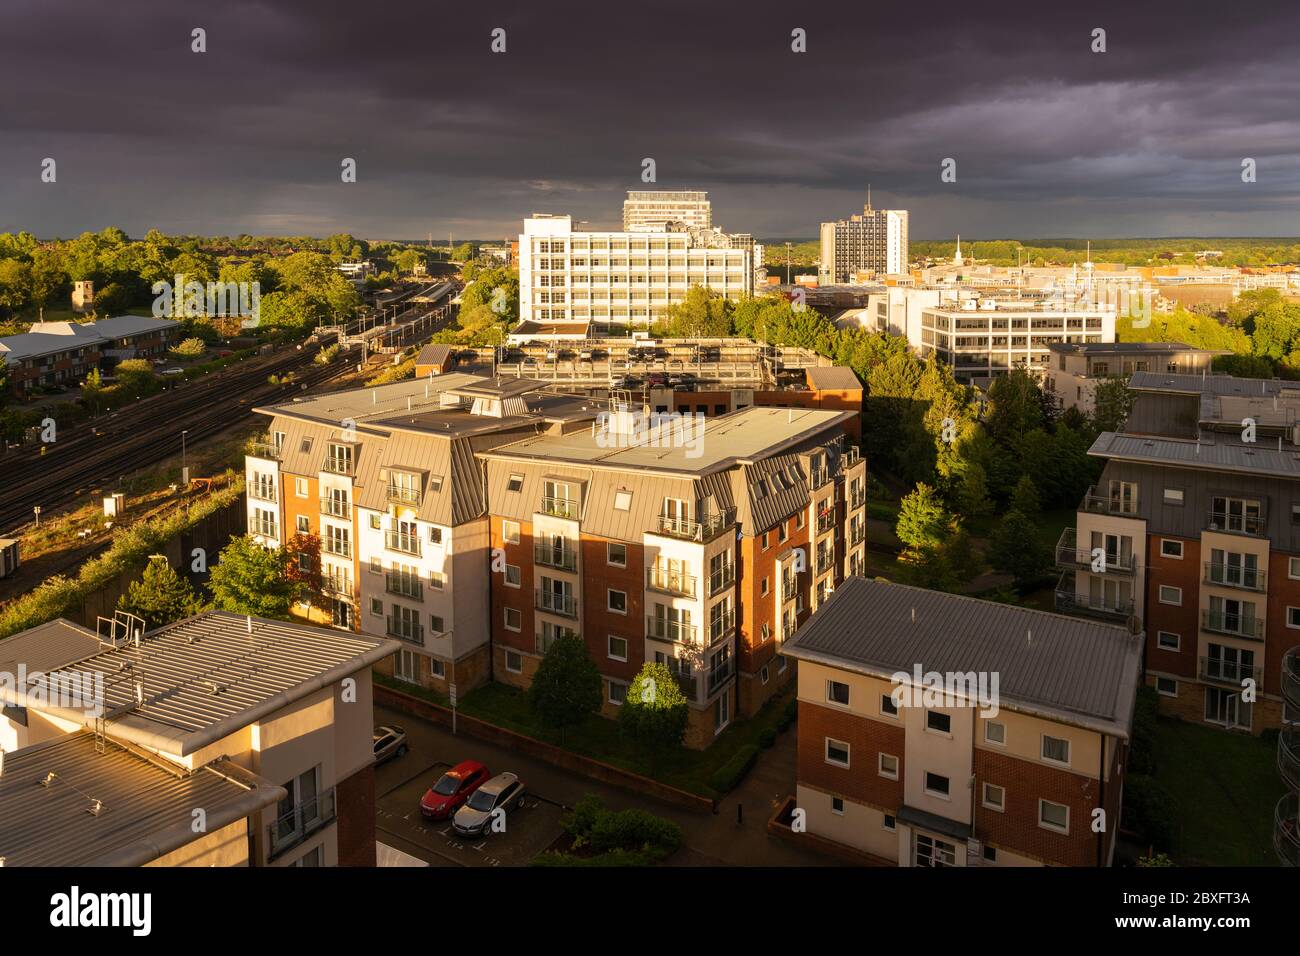 Una vista aerea dall'alto di un cielo tempestoso con le precipuose discese durante il tramonto con una suggestiva illuminazione sul centro di Basingstoke con appartamenti e uffici, Regno Unito Foto Stock